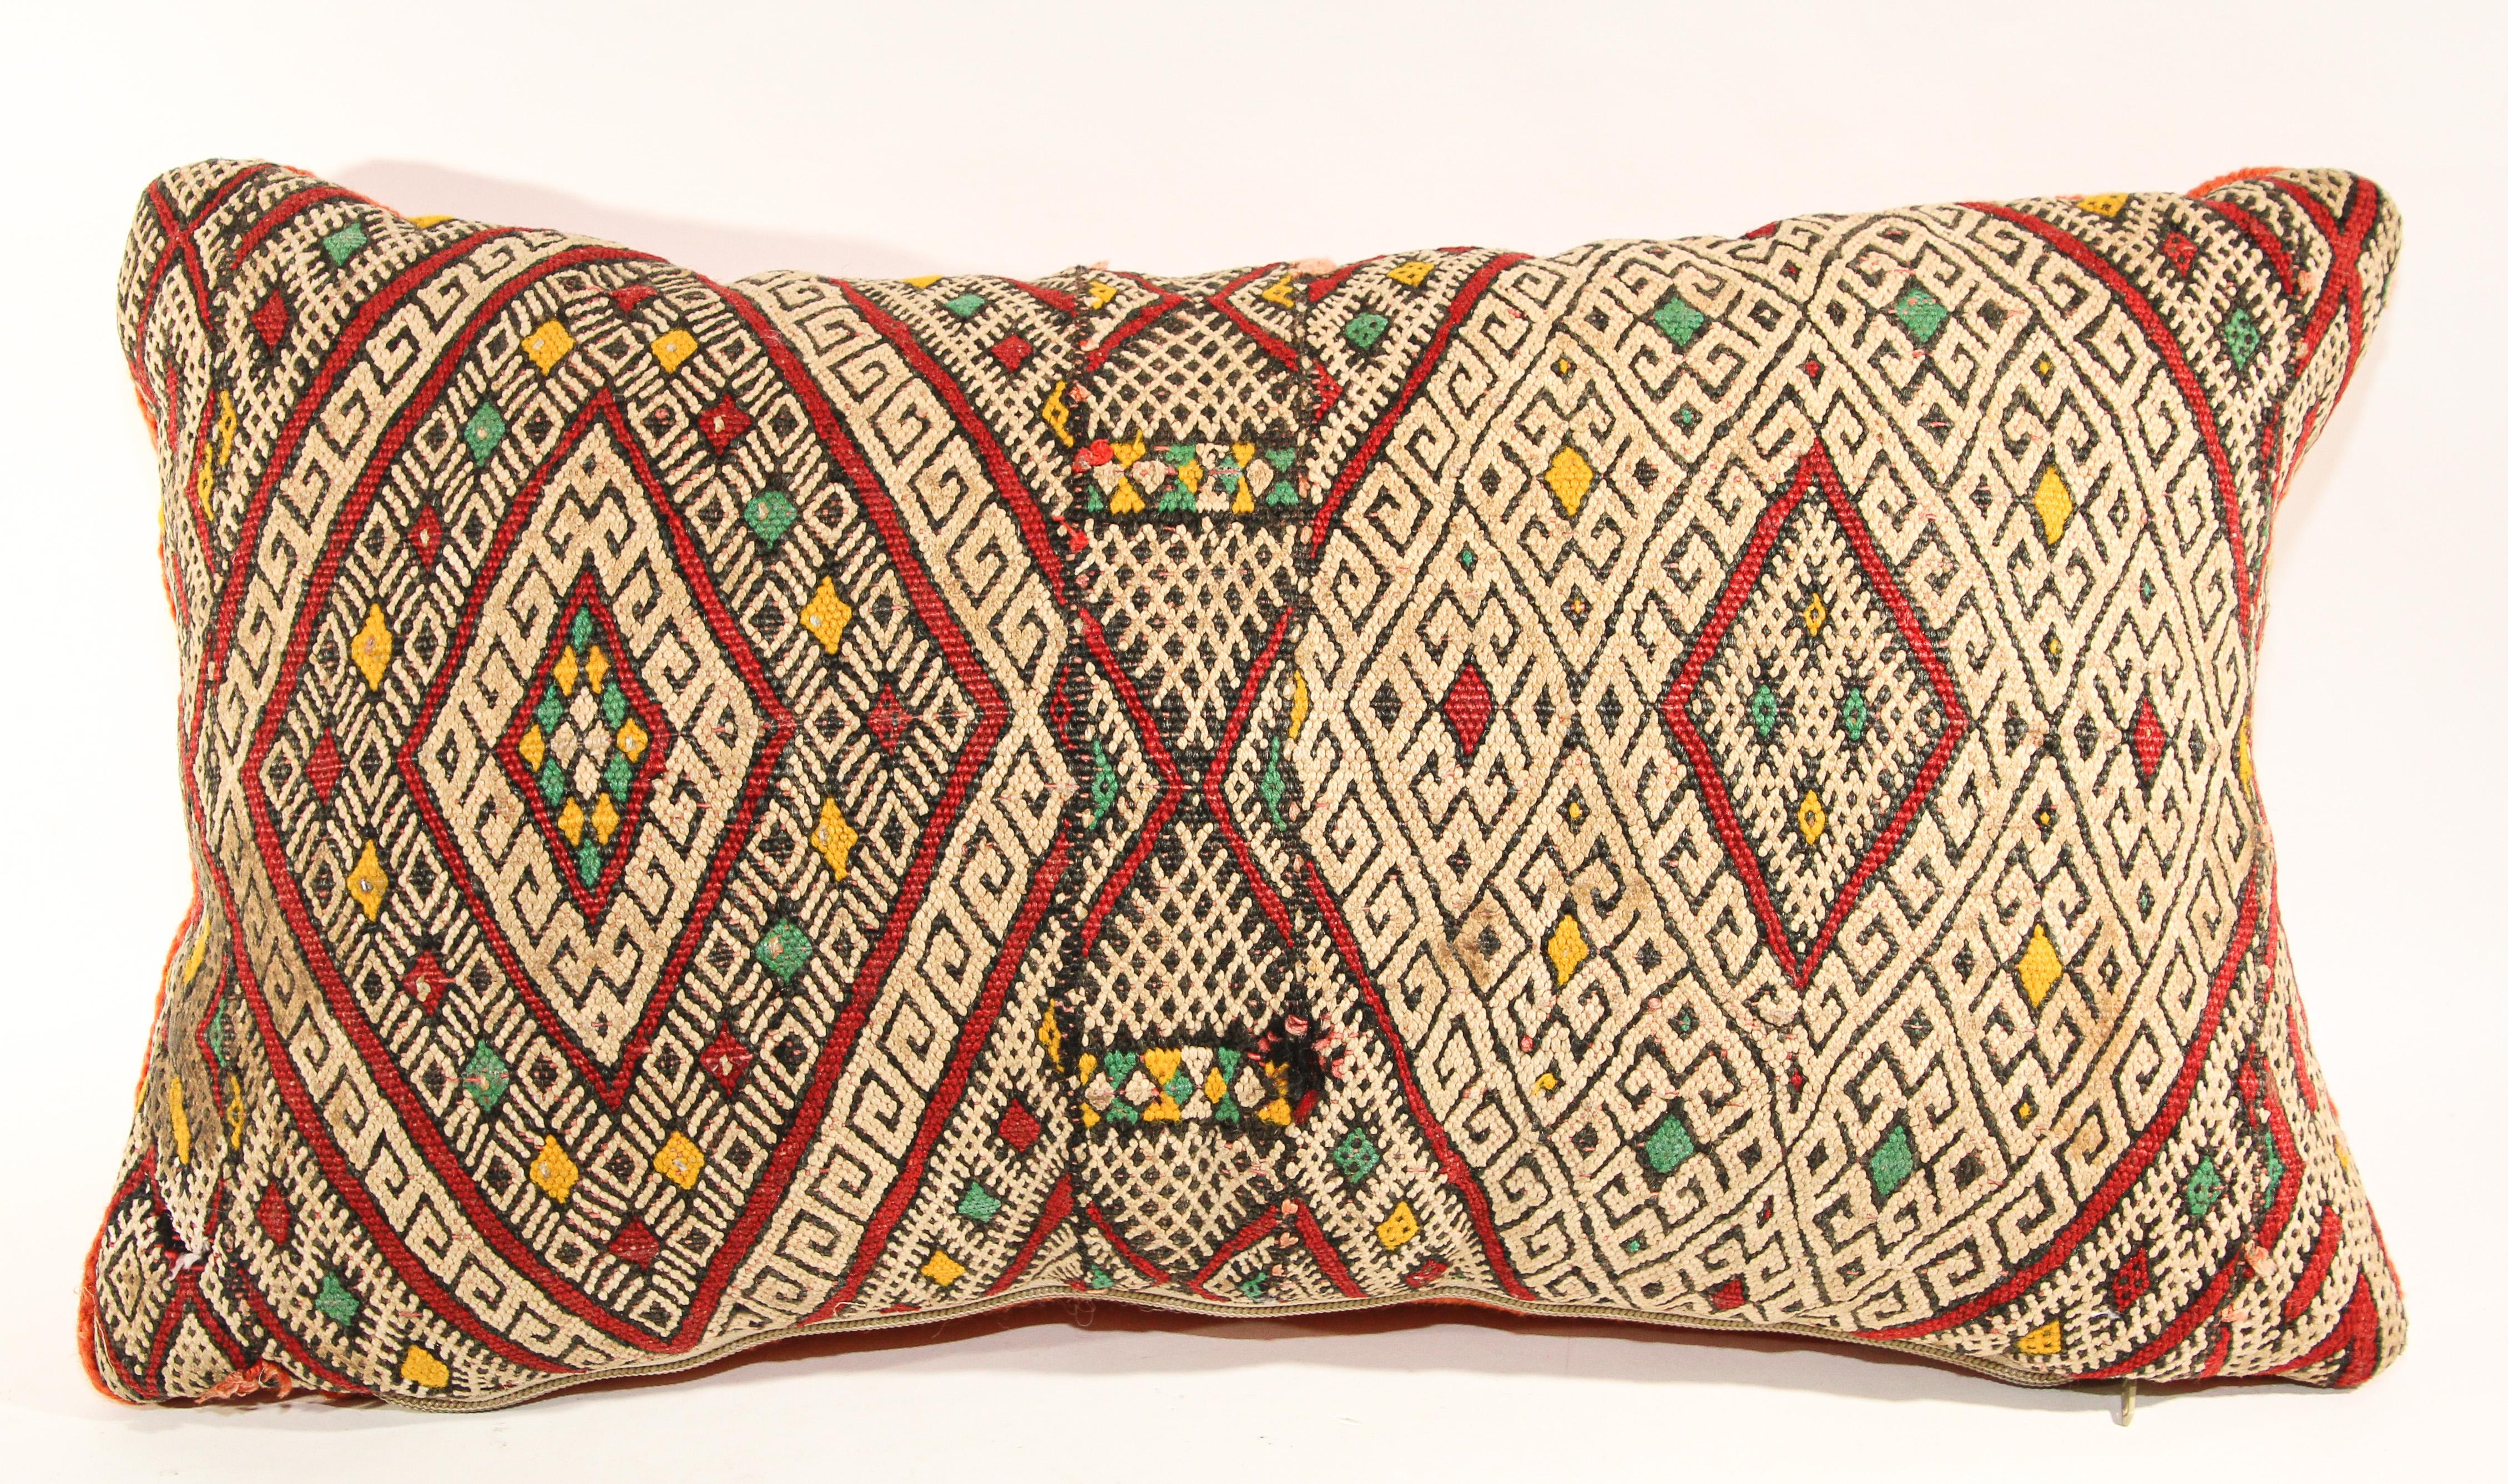 Authentique coussin ethnique berbère marocain tissé à la main à partir d'un tapis vintage.Le devant et le dos sont faits à partir d'un tapis différent, le devant est plus élaboré et le dos est plus simple.motifs tribaux géométriques nord-africains